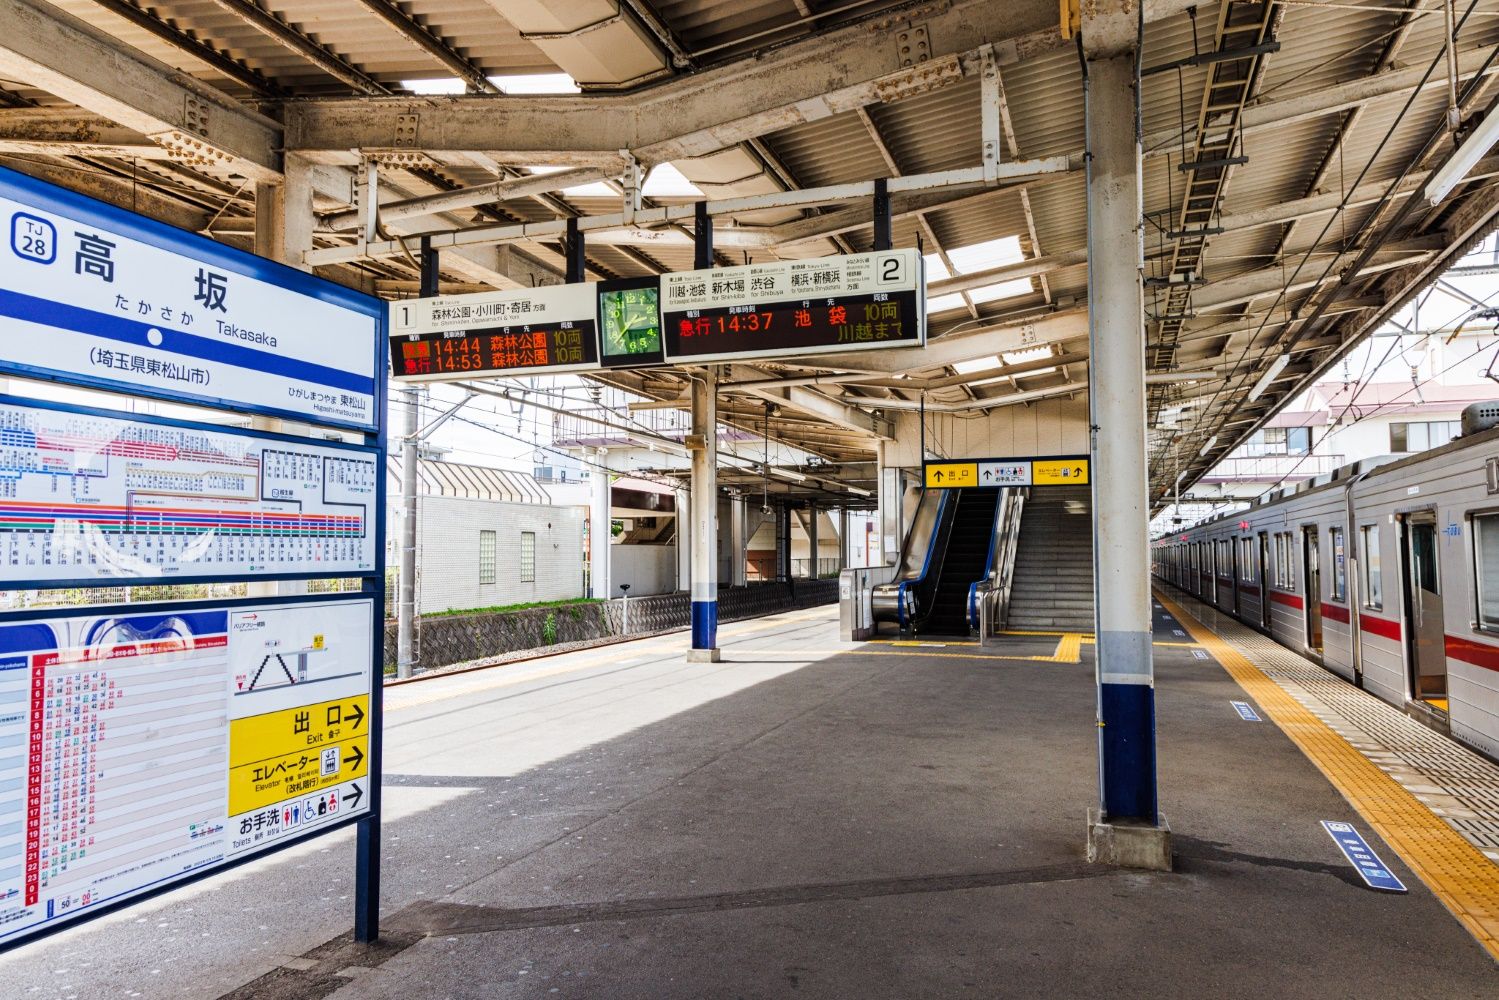 高坂駅は大東文化大学の最寄り駅。学生の利用が多い駅の1つだ（撮影：鼠入昌史）